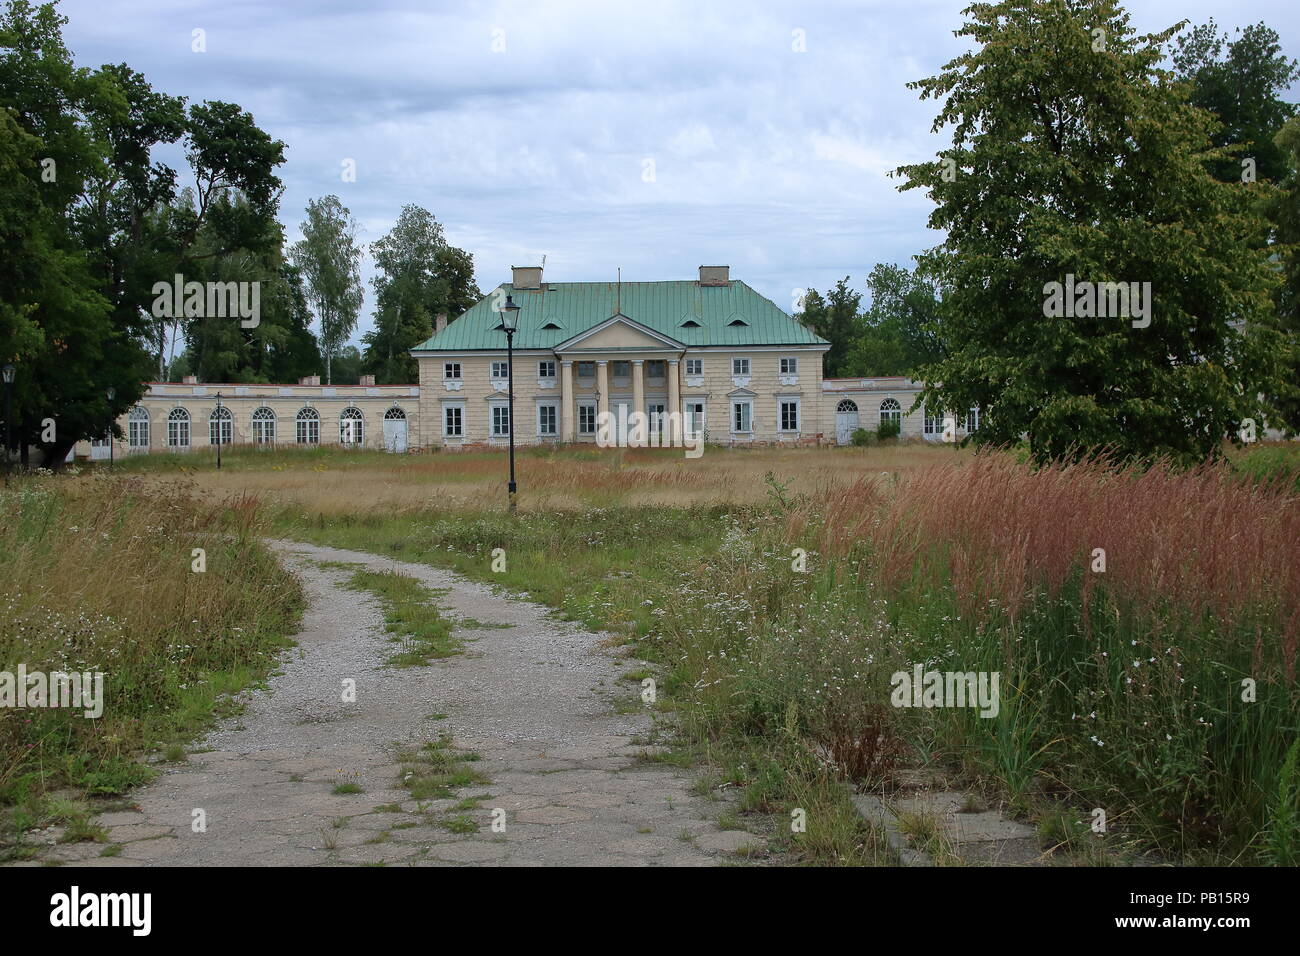 Descuidado jardín y el palacio clasicista construido por Stanislaw Malachowski en Bialaczow, Polonia Foto de stock